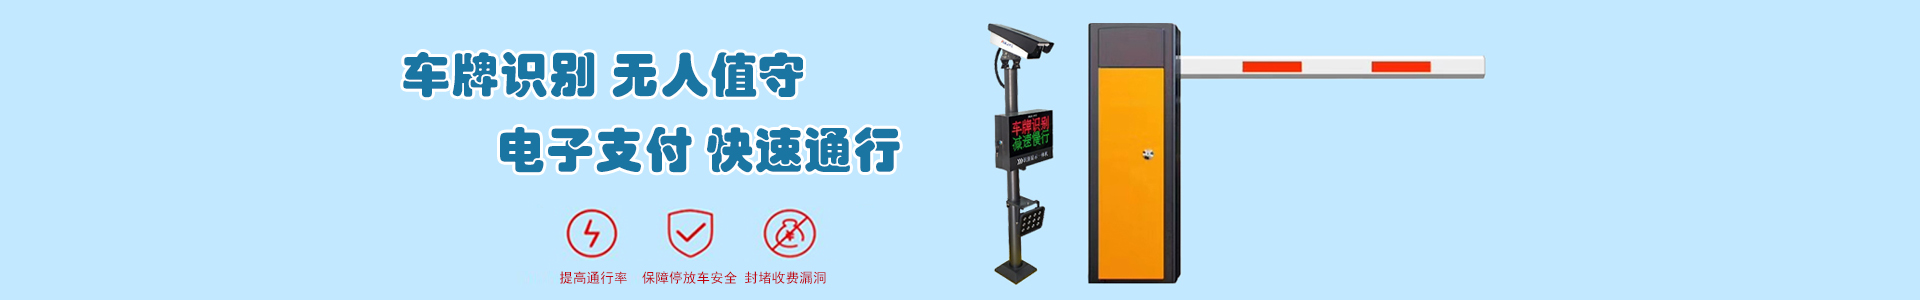 监控5-监控系统-上海帆蓝智能科技有限公司-车辆车牌识别|监控摄像头|道闸|小区门禁|人脸识别|伸缩门|